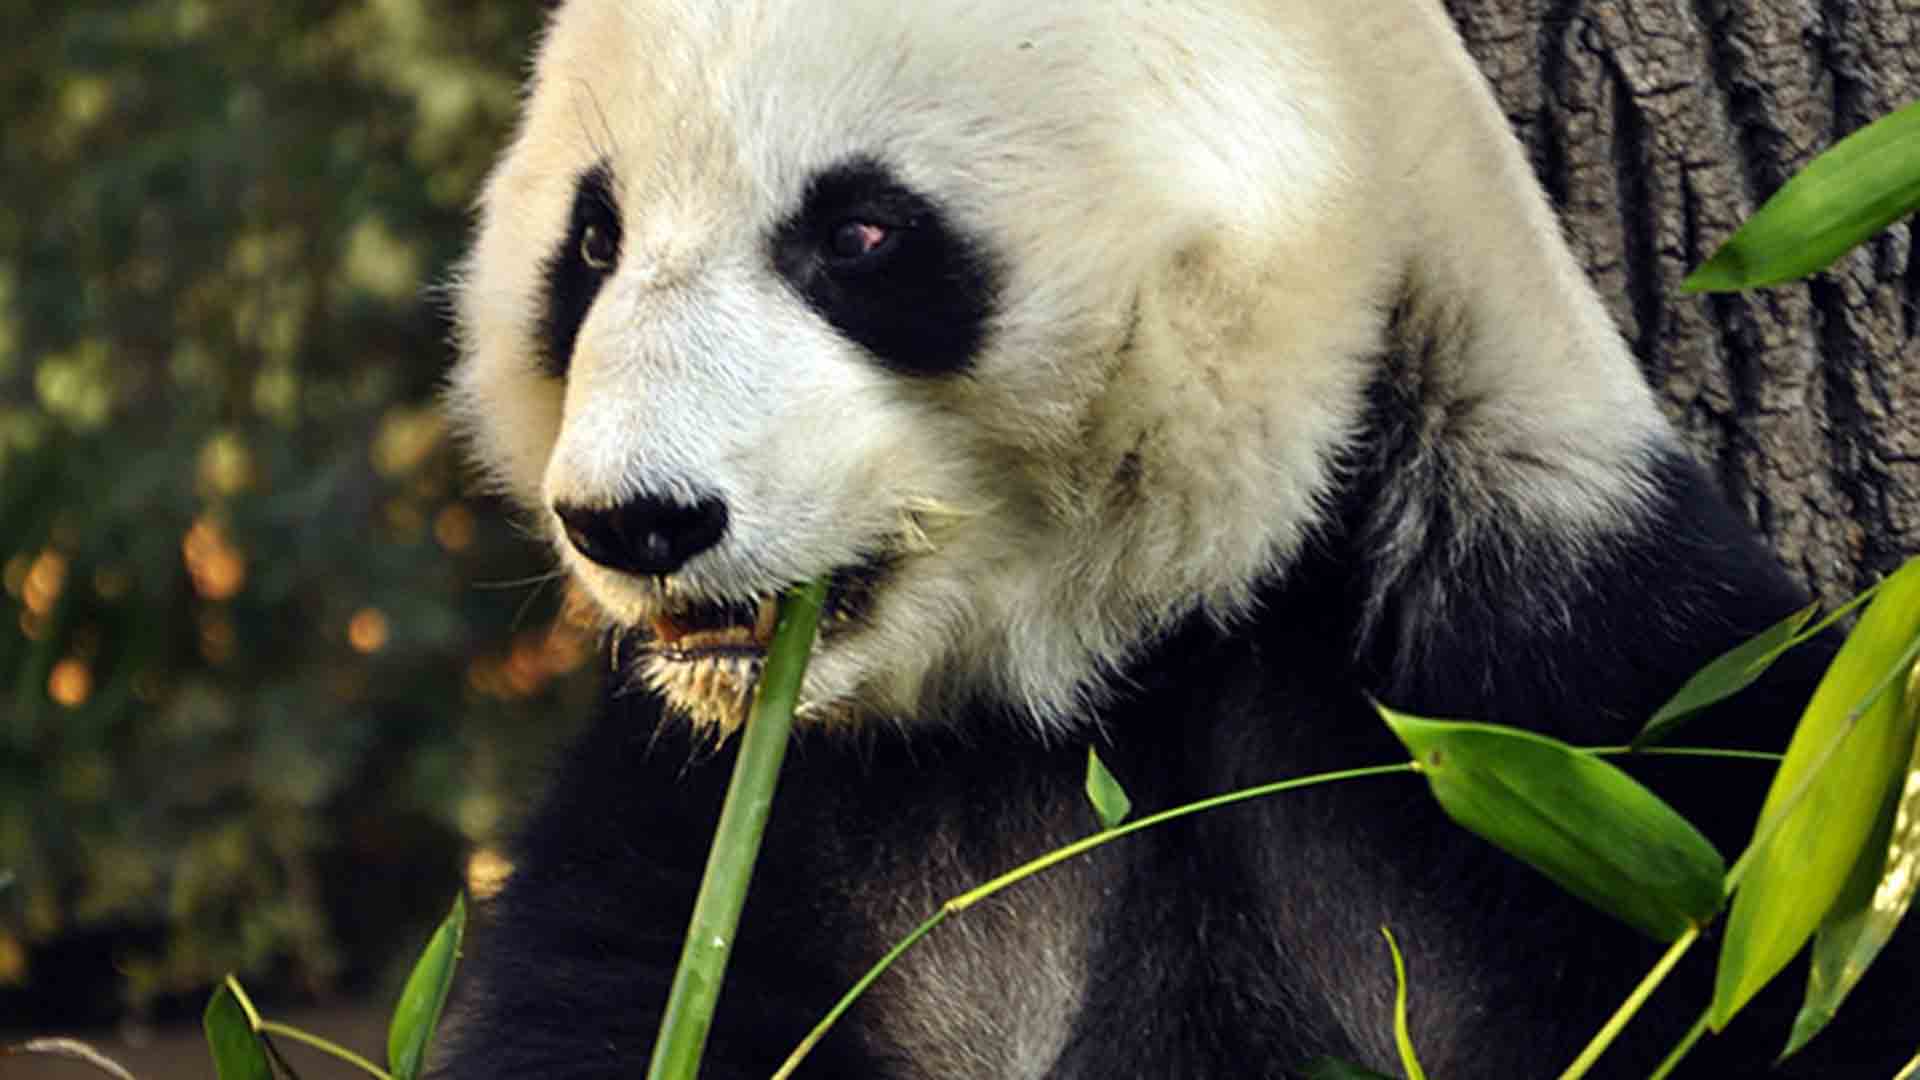 La panda mexicana Shuan Shuan, la más longeva fuera de China, cumple 31 años